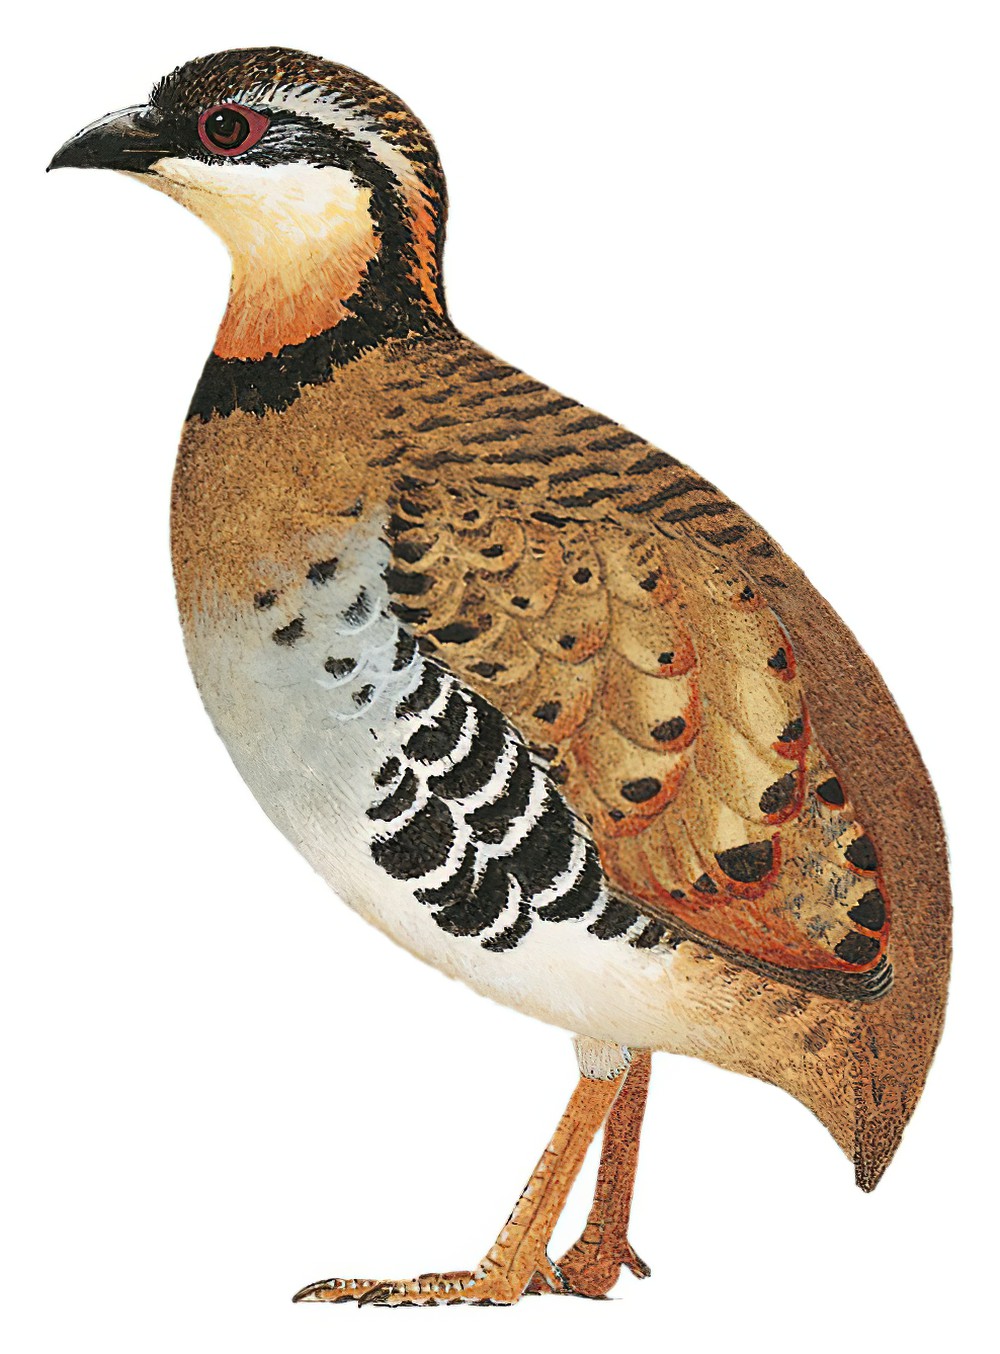 Orange-necked Partridge / Arborophila davidi